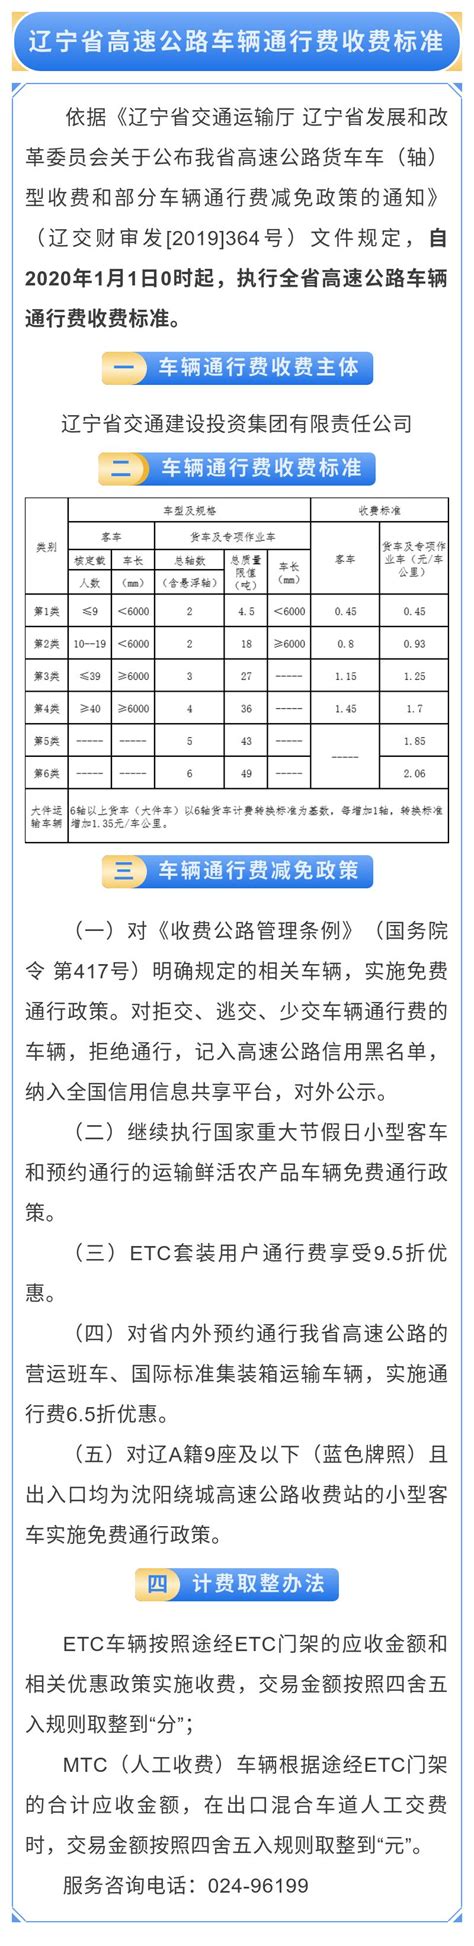 辽宁省高速公路车辆通行费收费标准